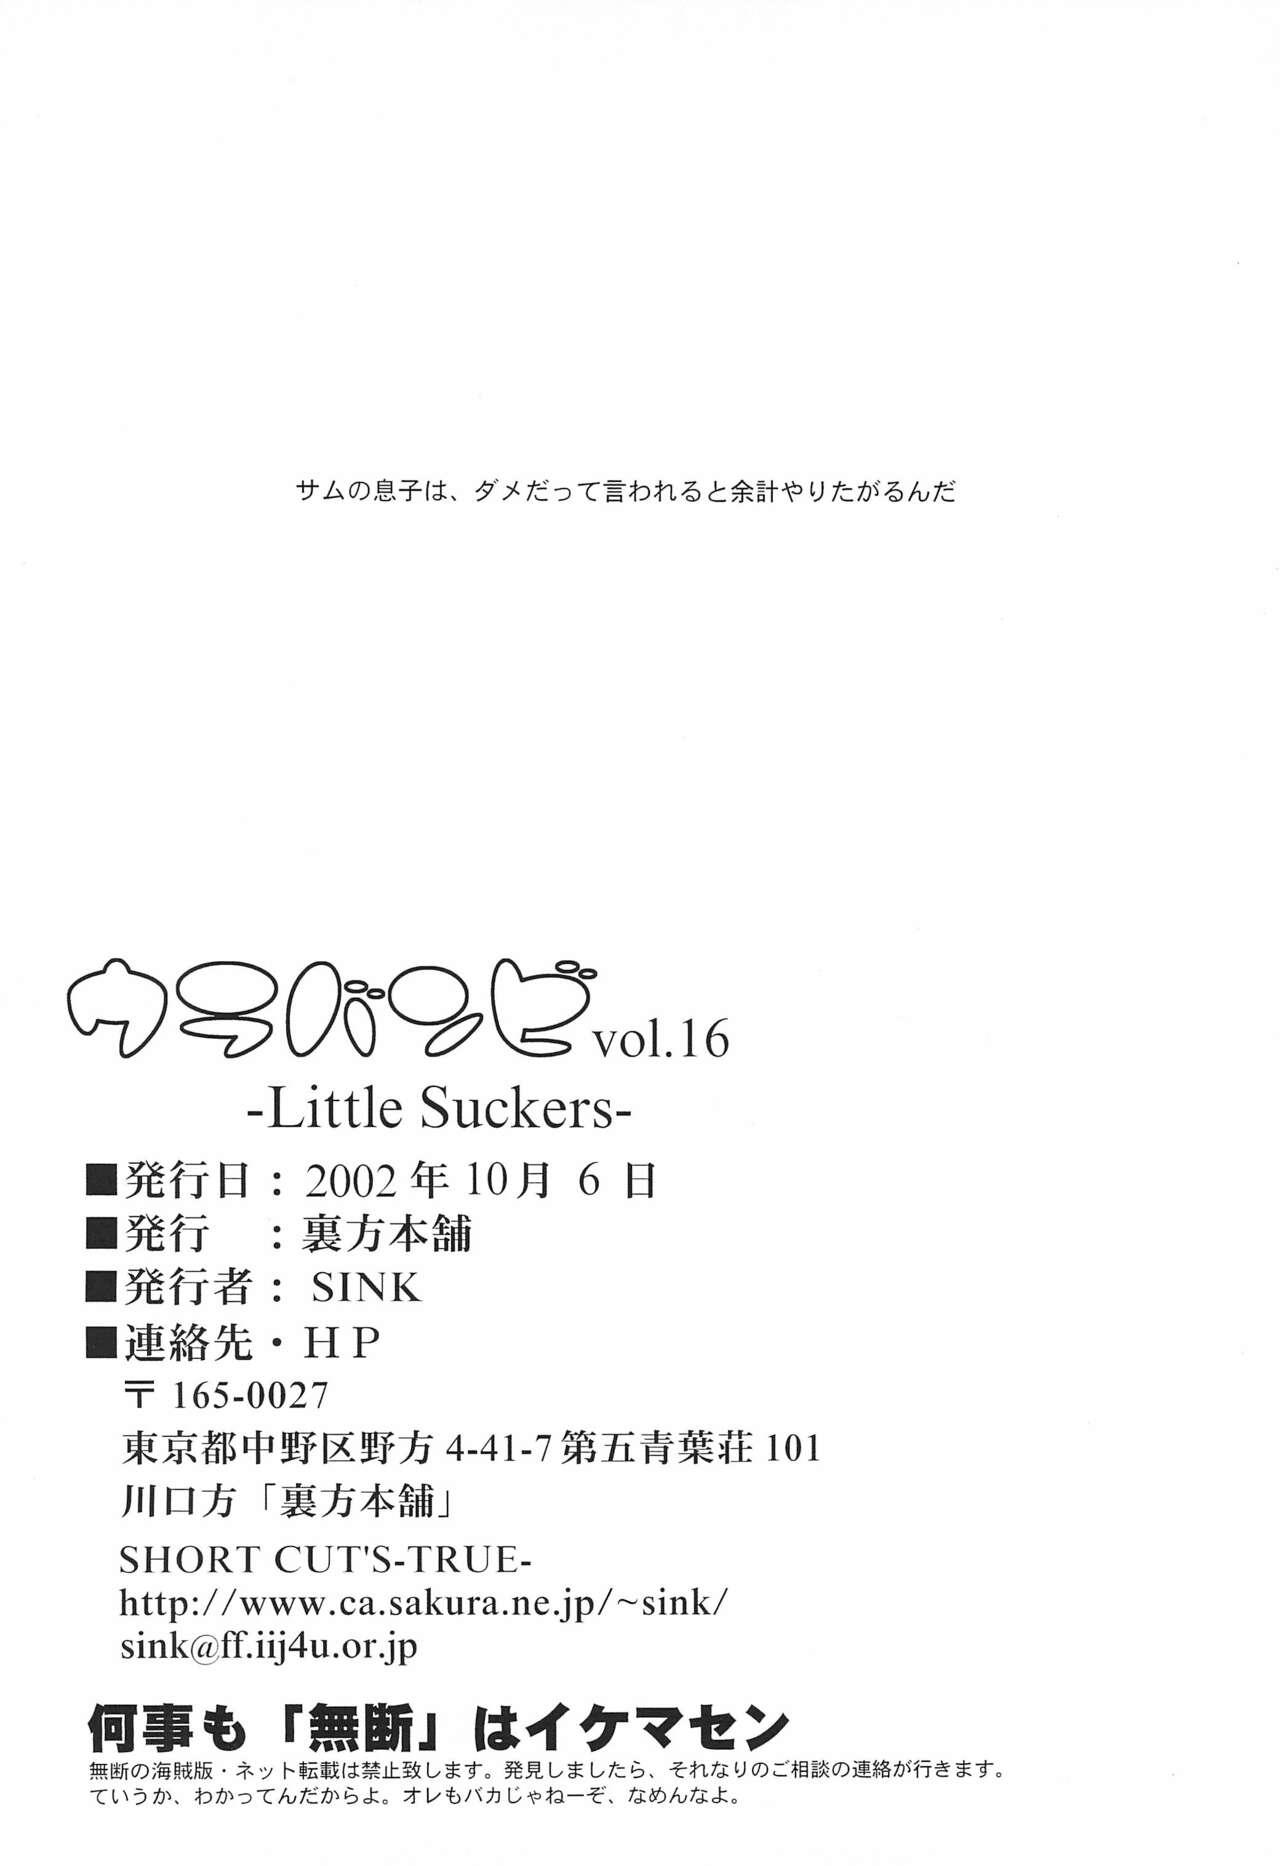 Urabambi Vol. 16 - Little Suckers 25